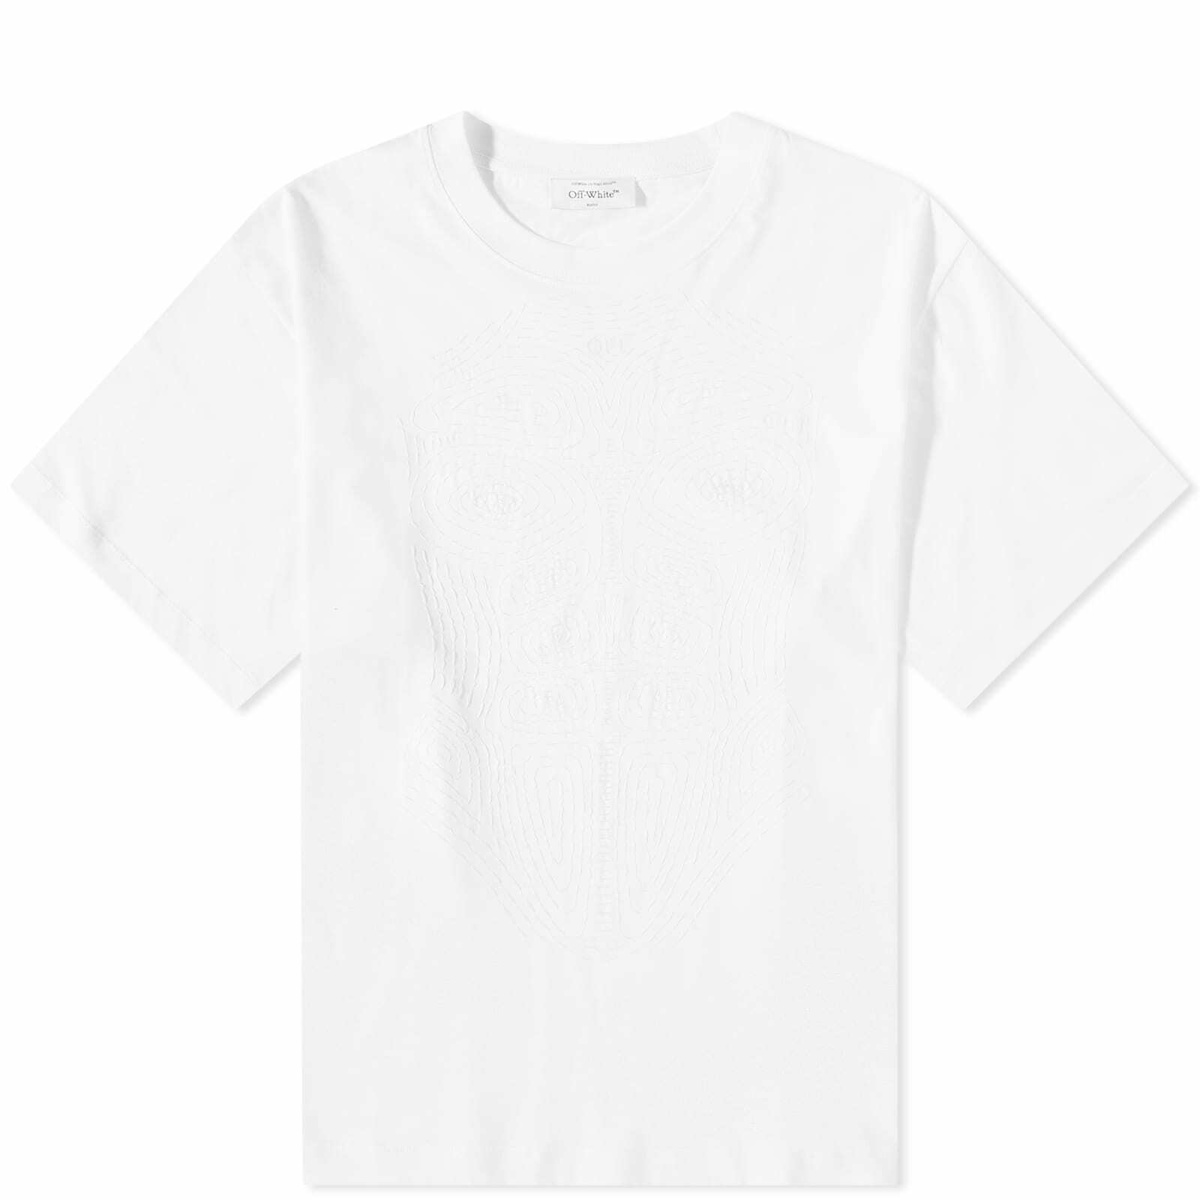 Off-White x MLB Chicago White Sox T-Shirt Black/White